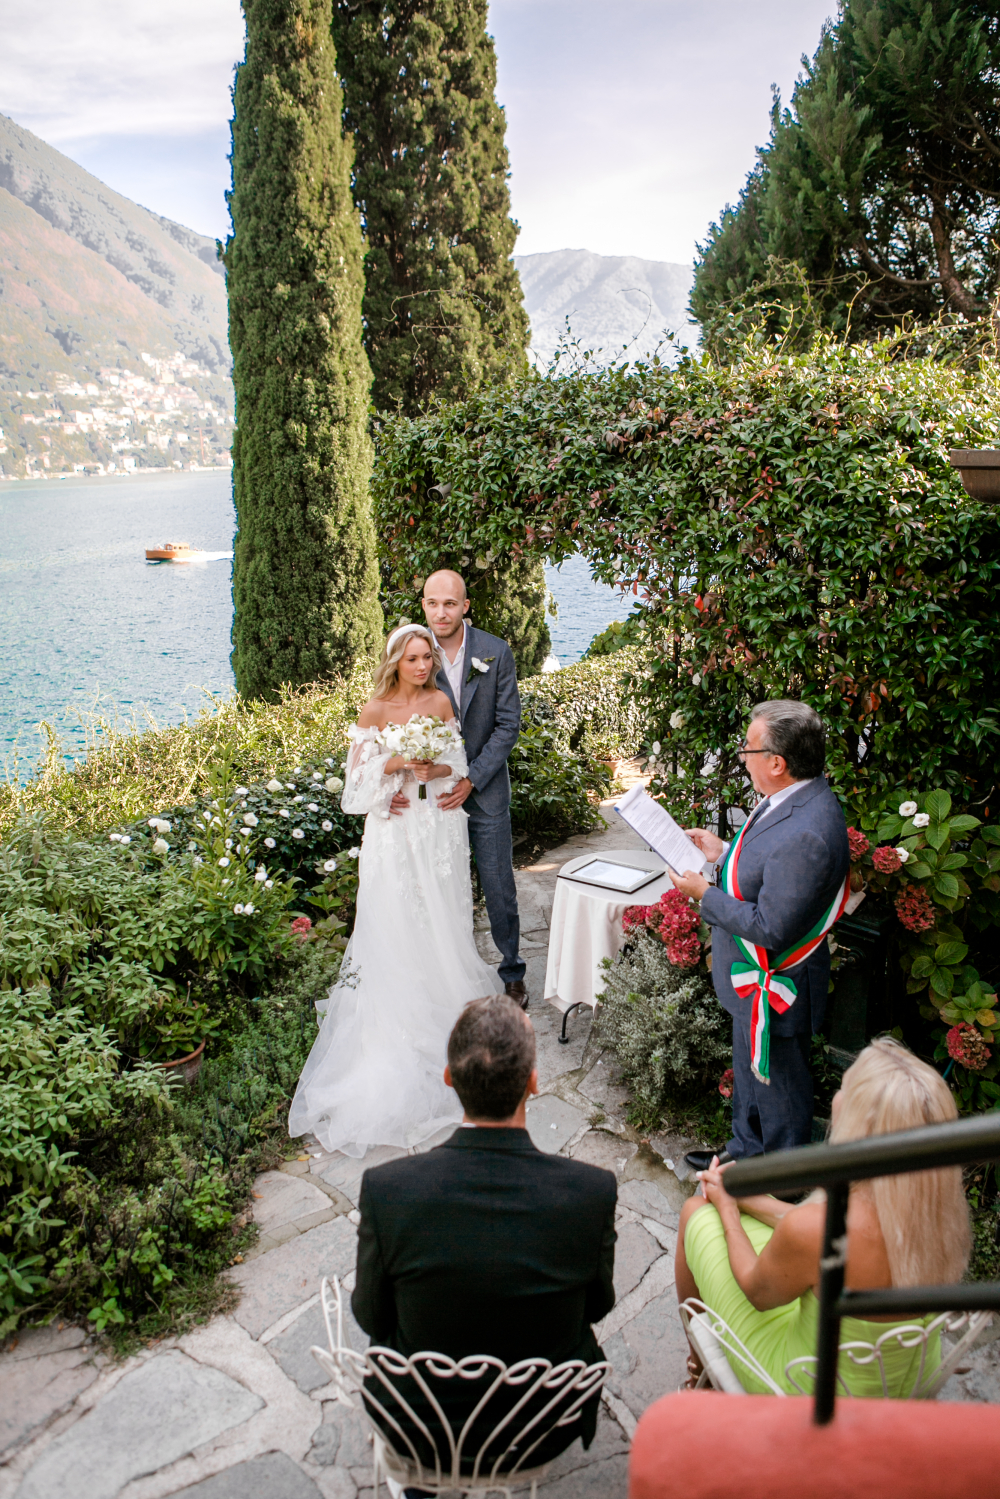 Официальная свадьба для двоих в Италии 